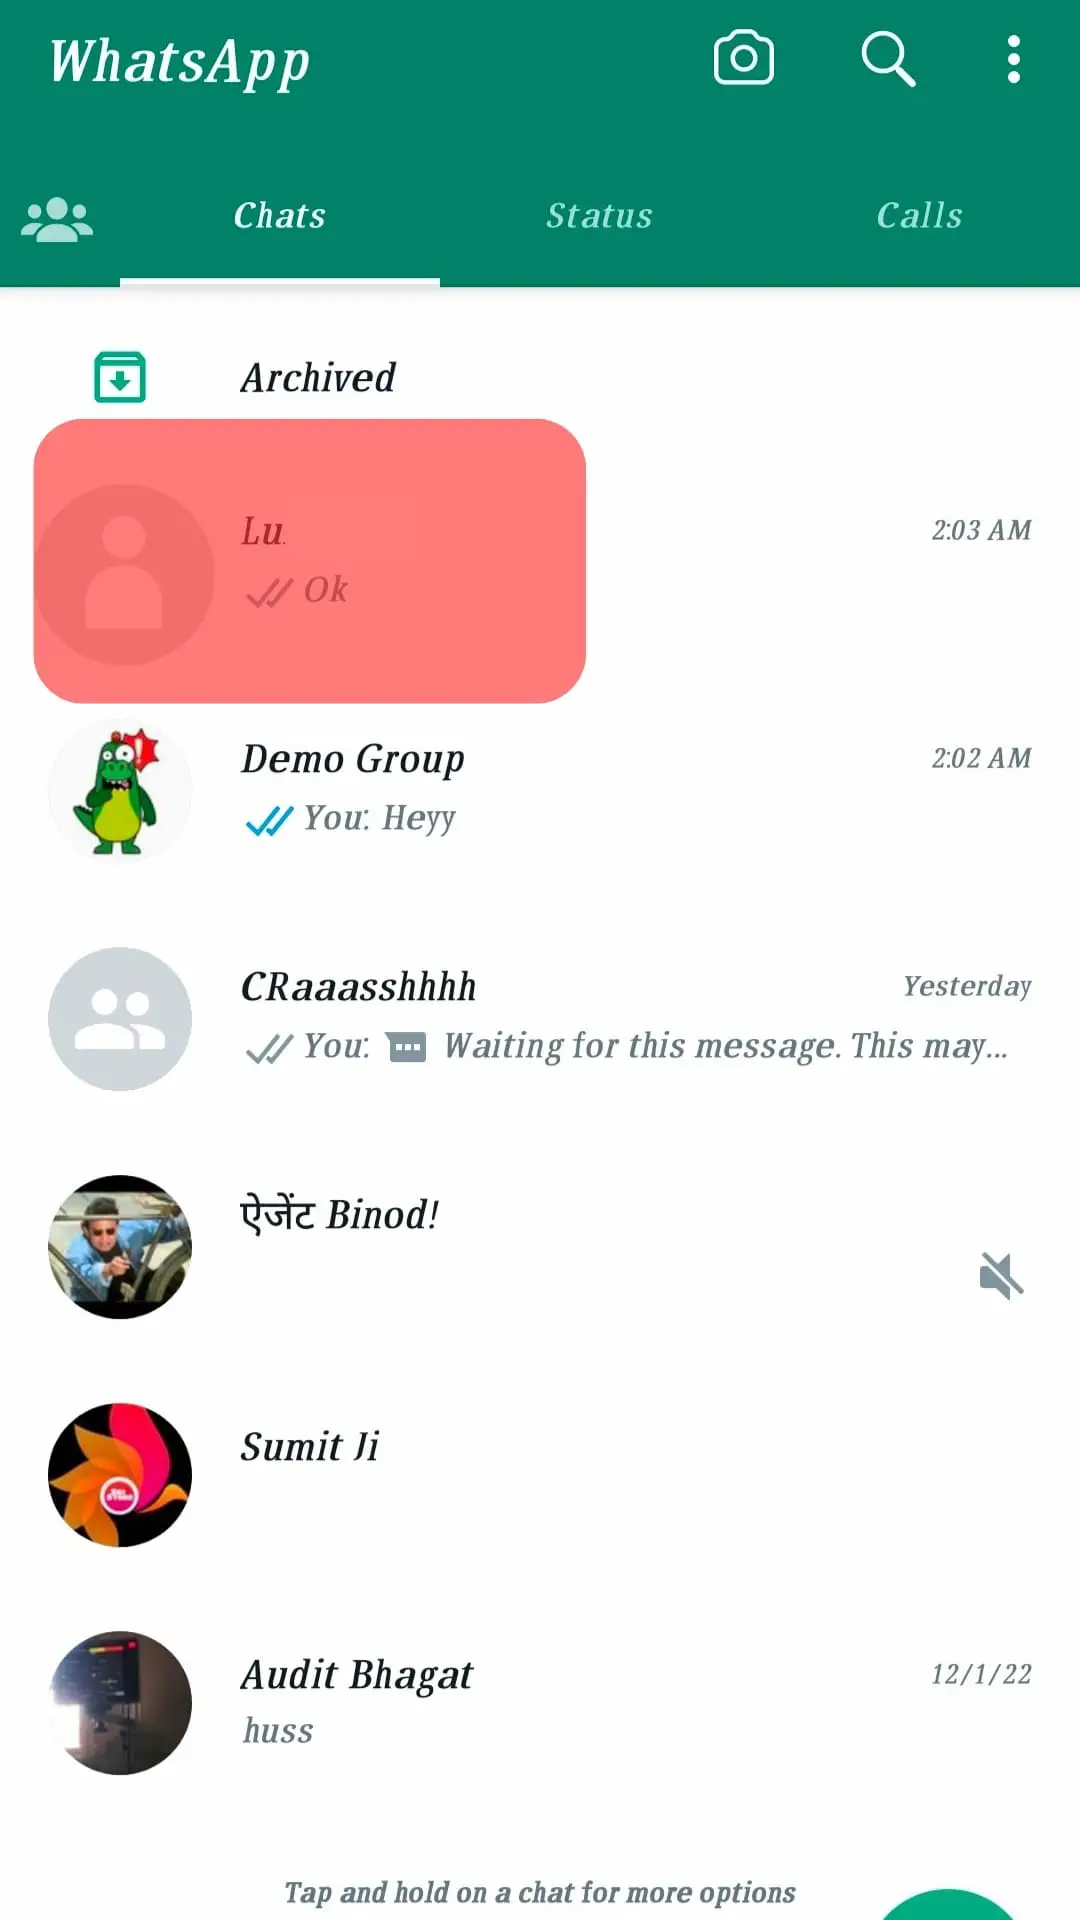 Cómo encontrar un WhatsApp ¿Grupo?